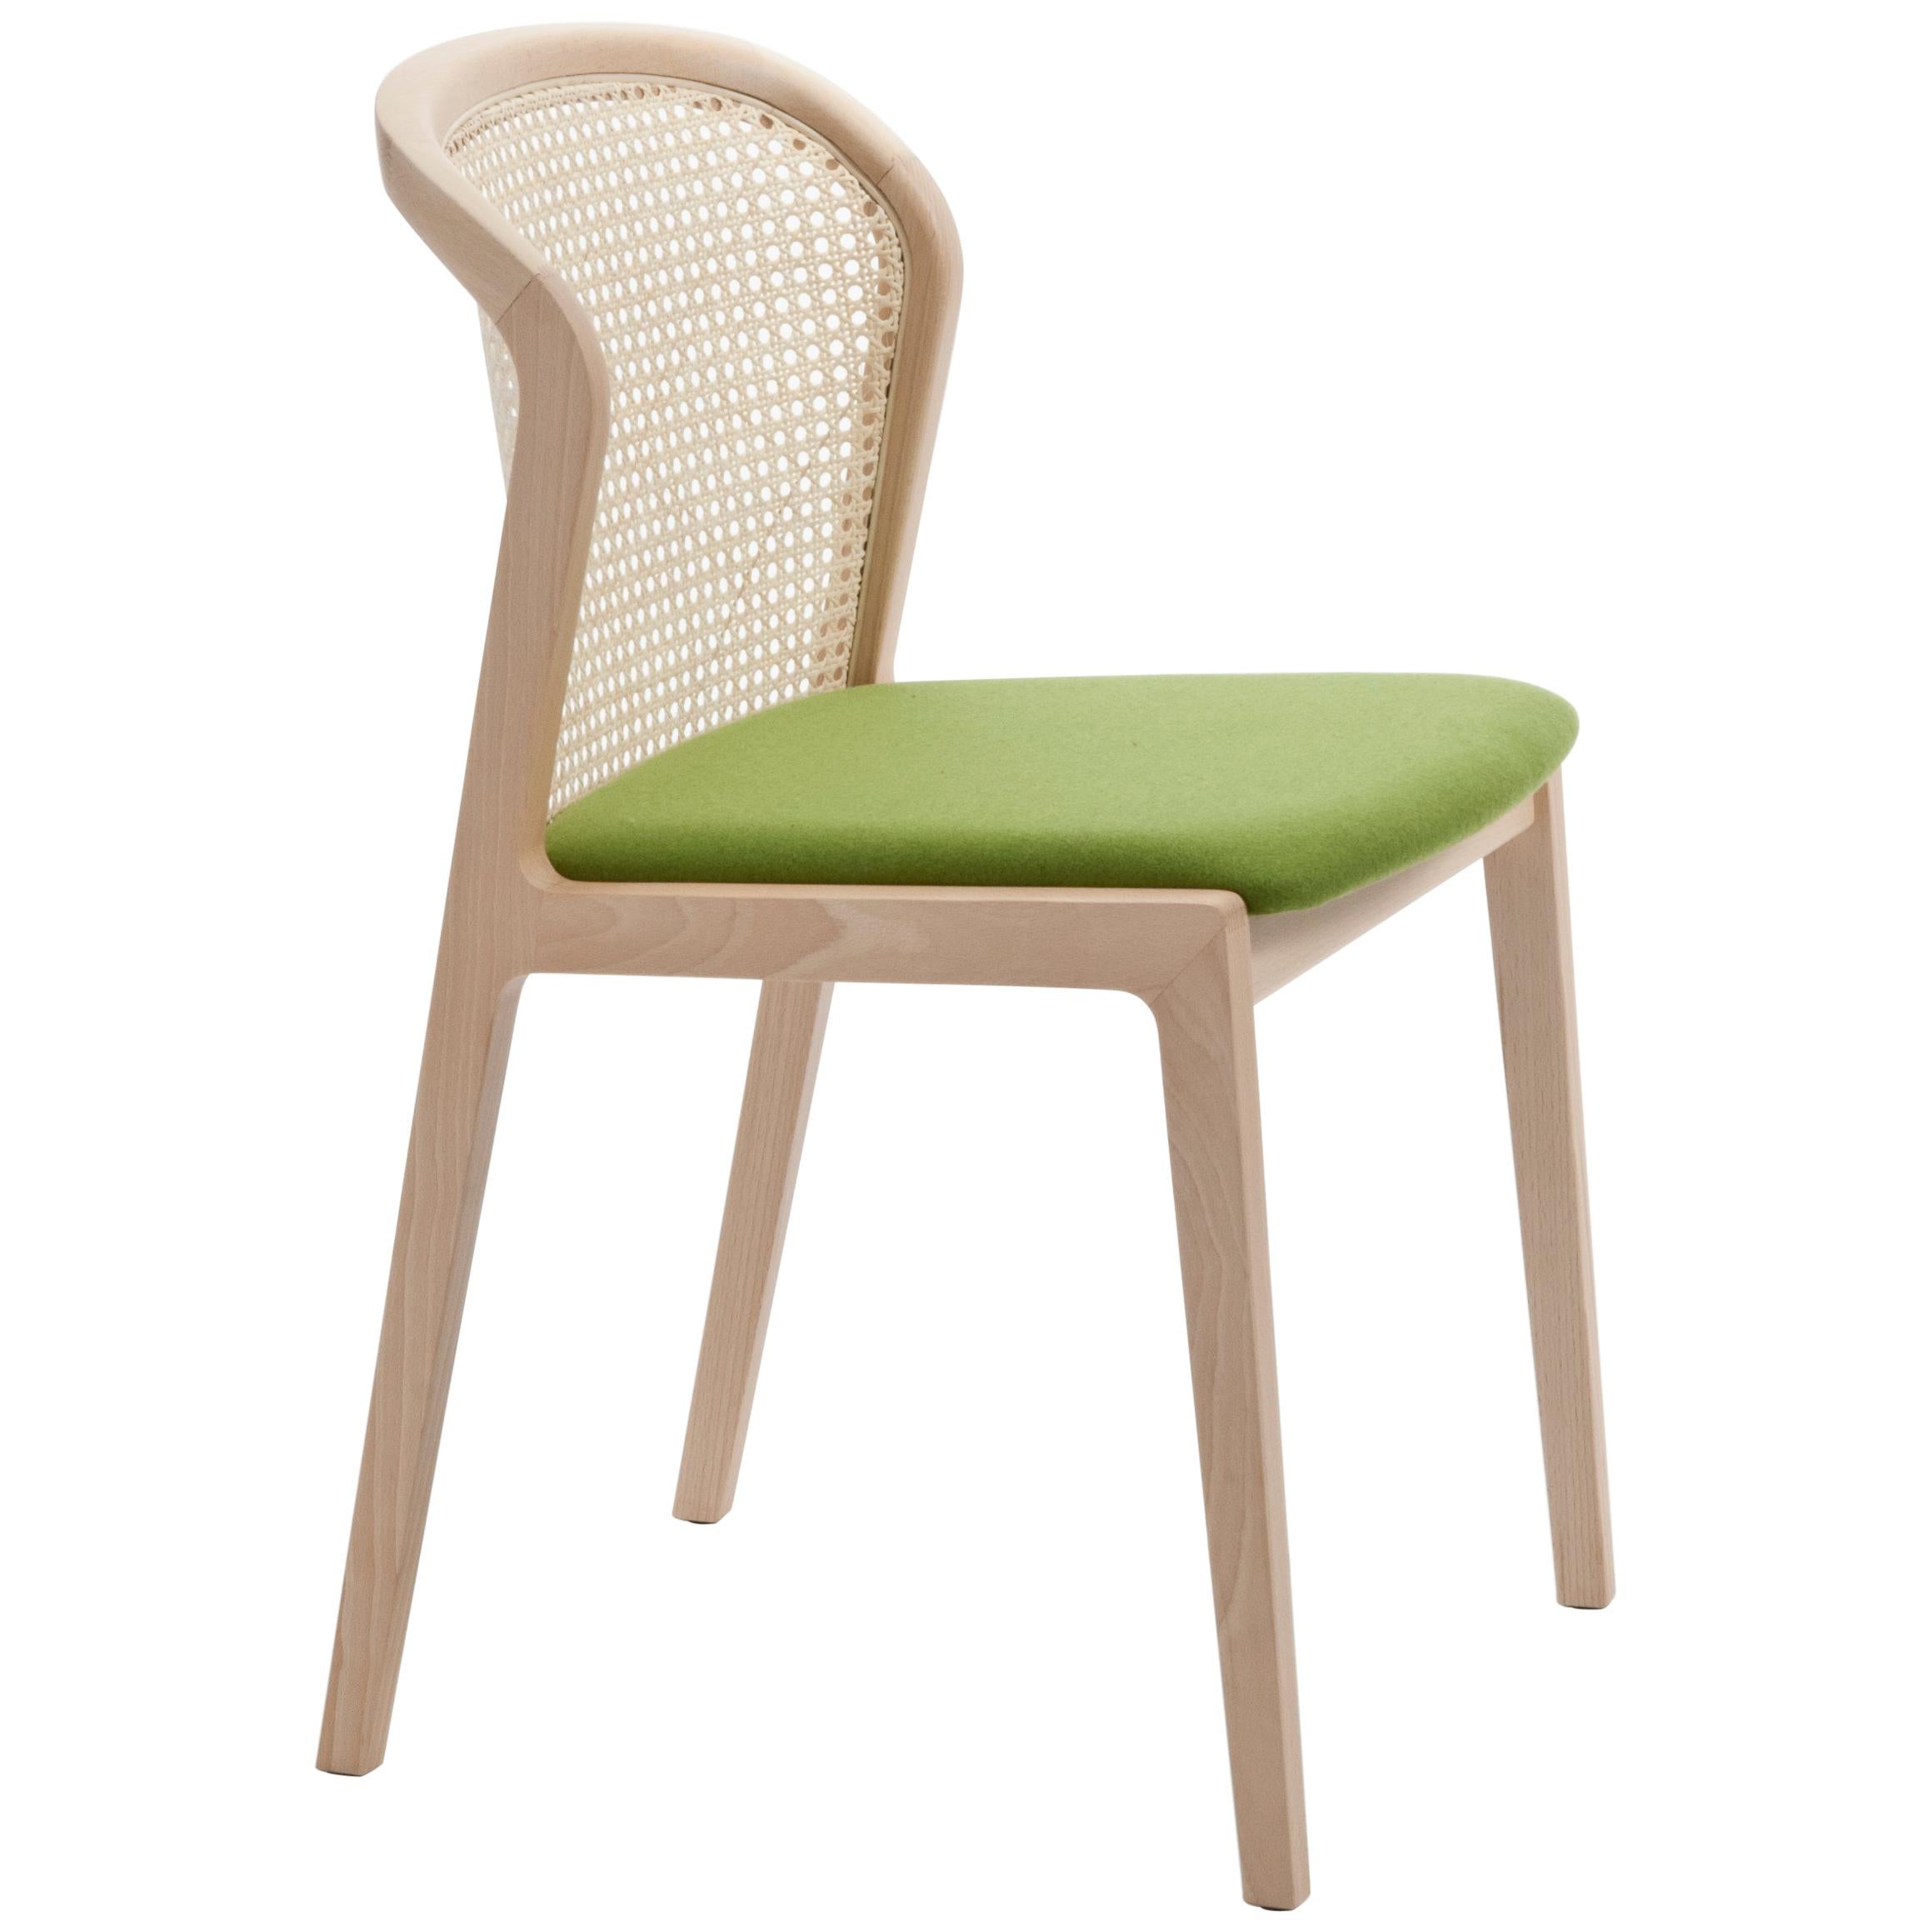 Wiener Stuhl Vienna von Col, Modernes Design aus Holz und Stroh, grüner gepolsterter Sitz